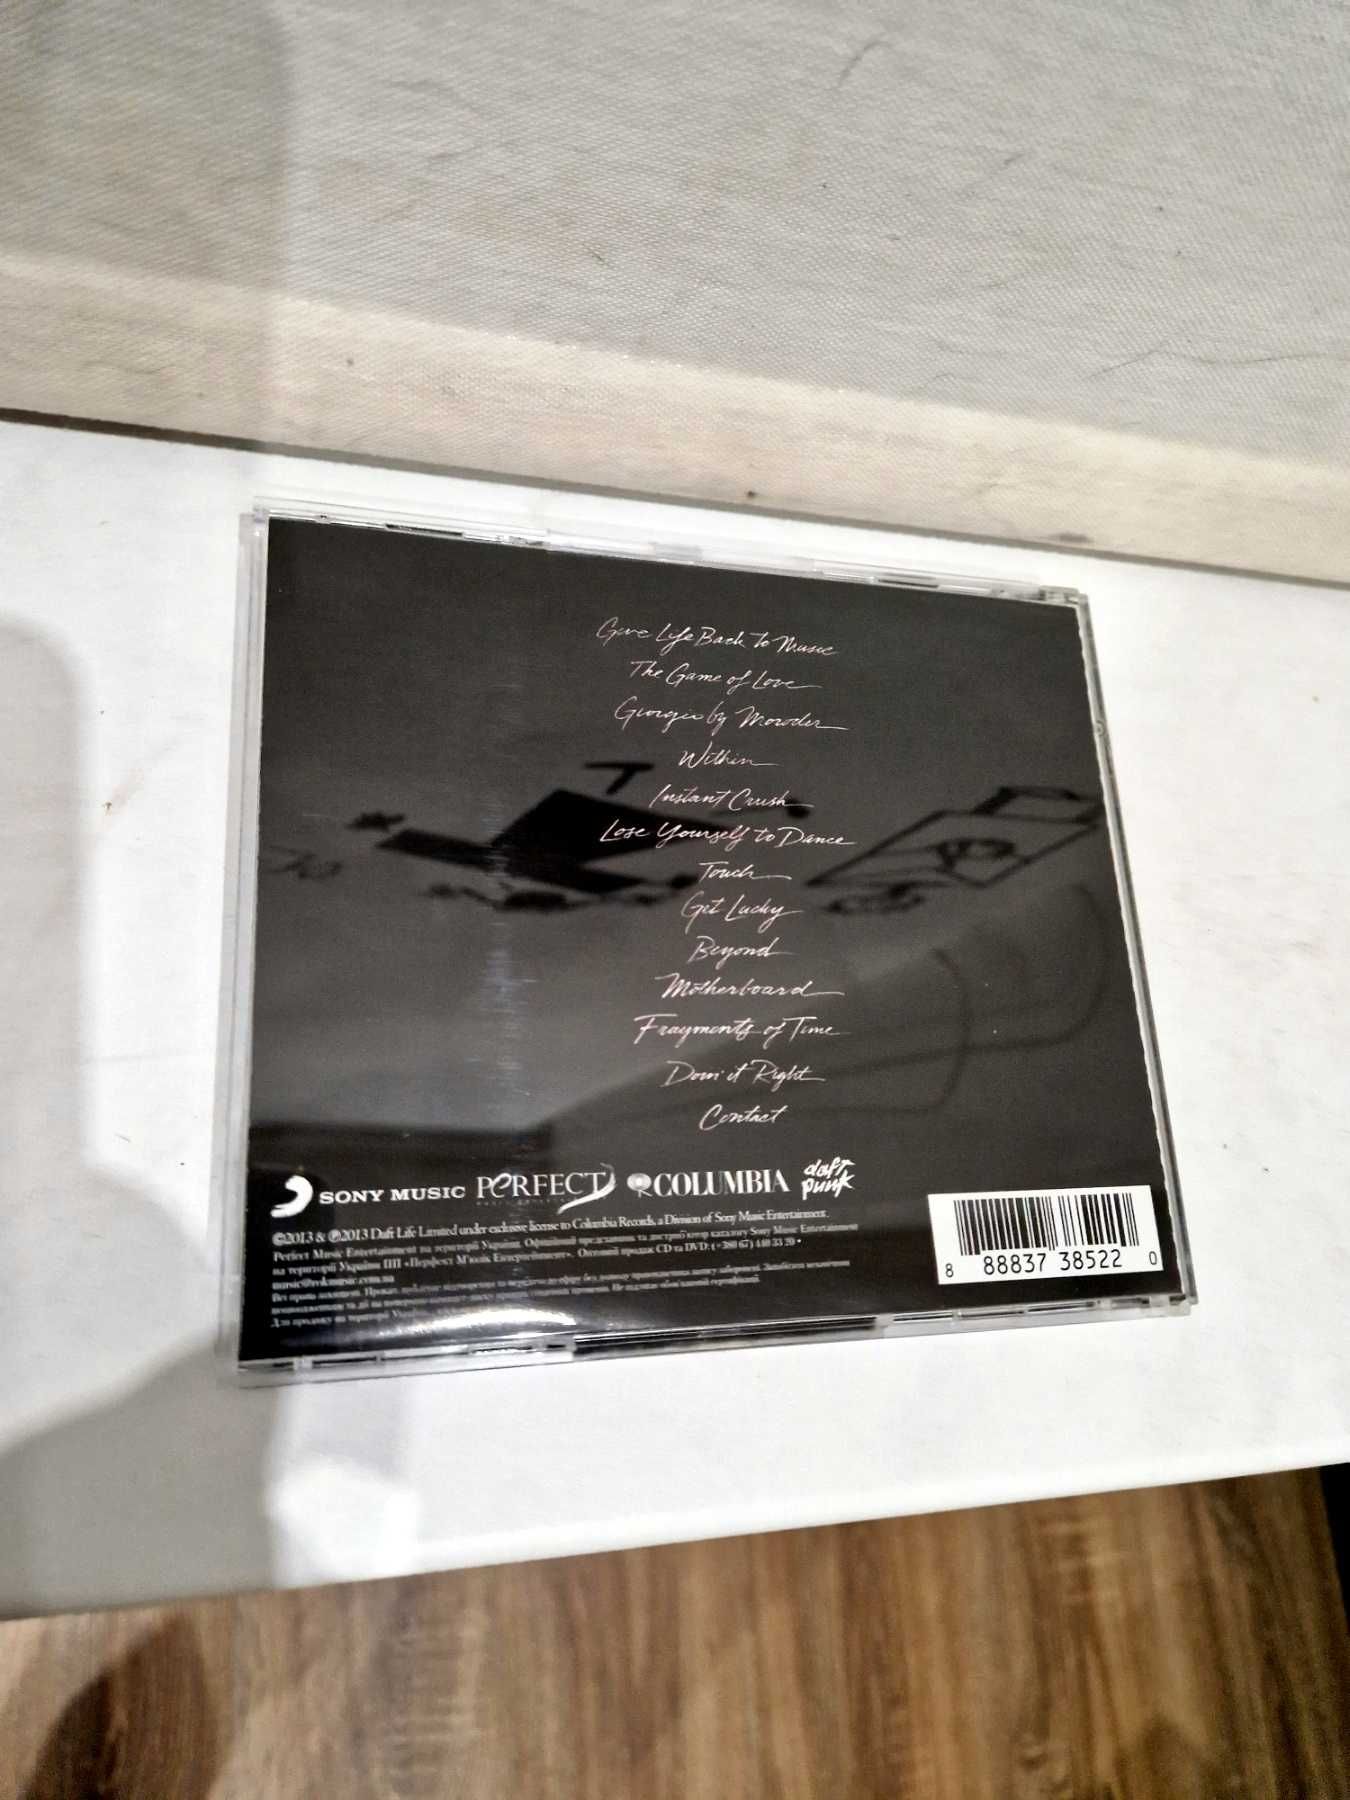 Компакт диски CD с музыкой DAFT PUNK и Depeche mode